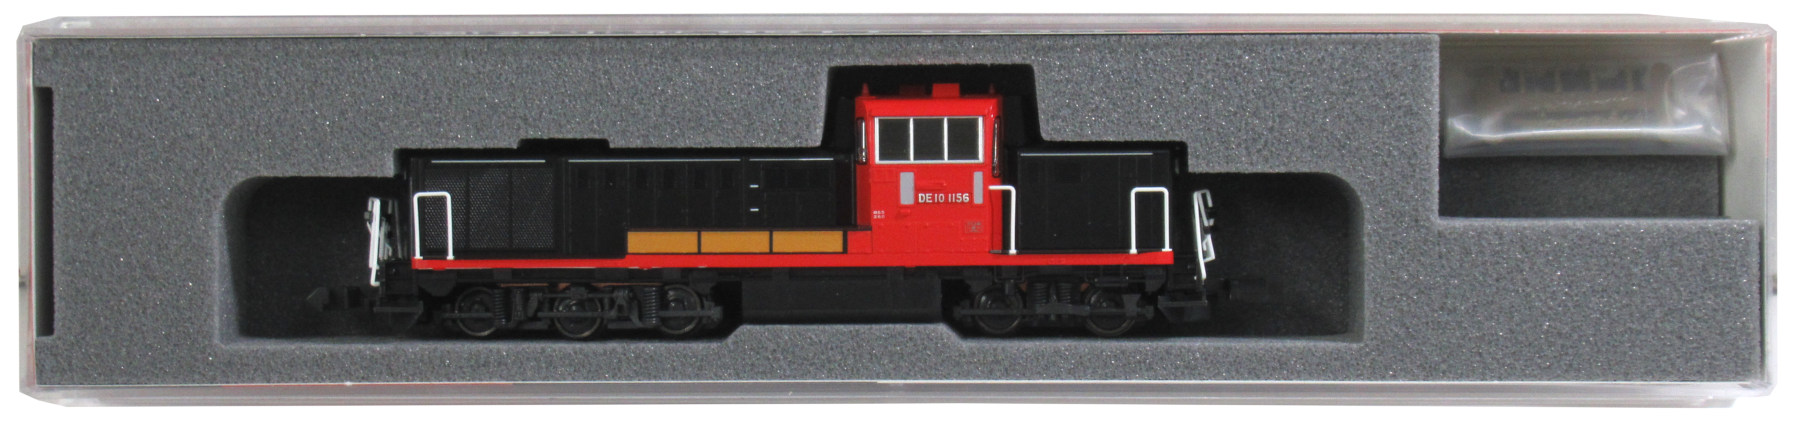 公式]鉄道模型(7011-9KATO京都駅店企画製品 DE10-1156 梅小路運転区 